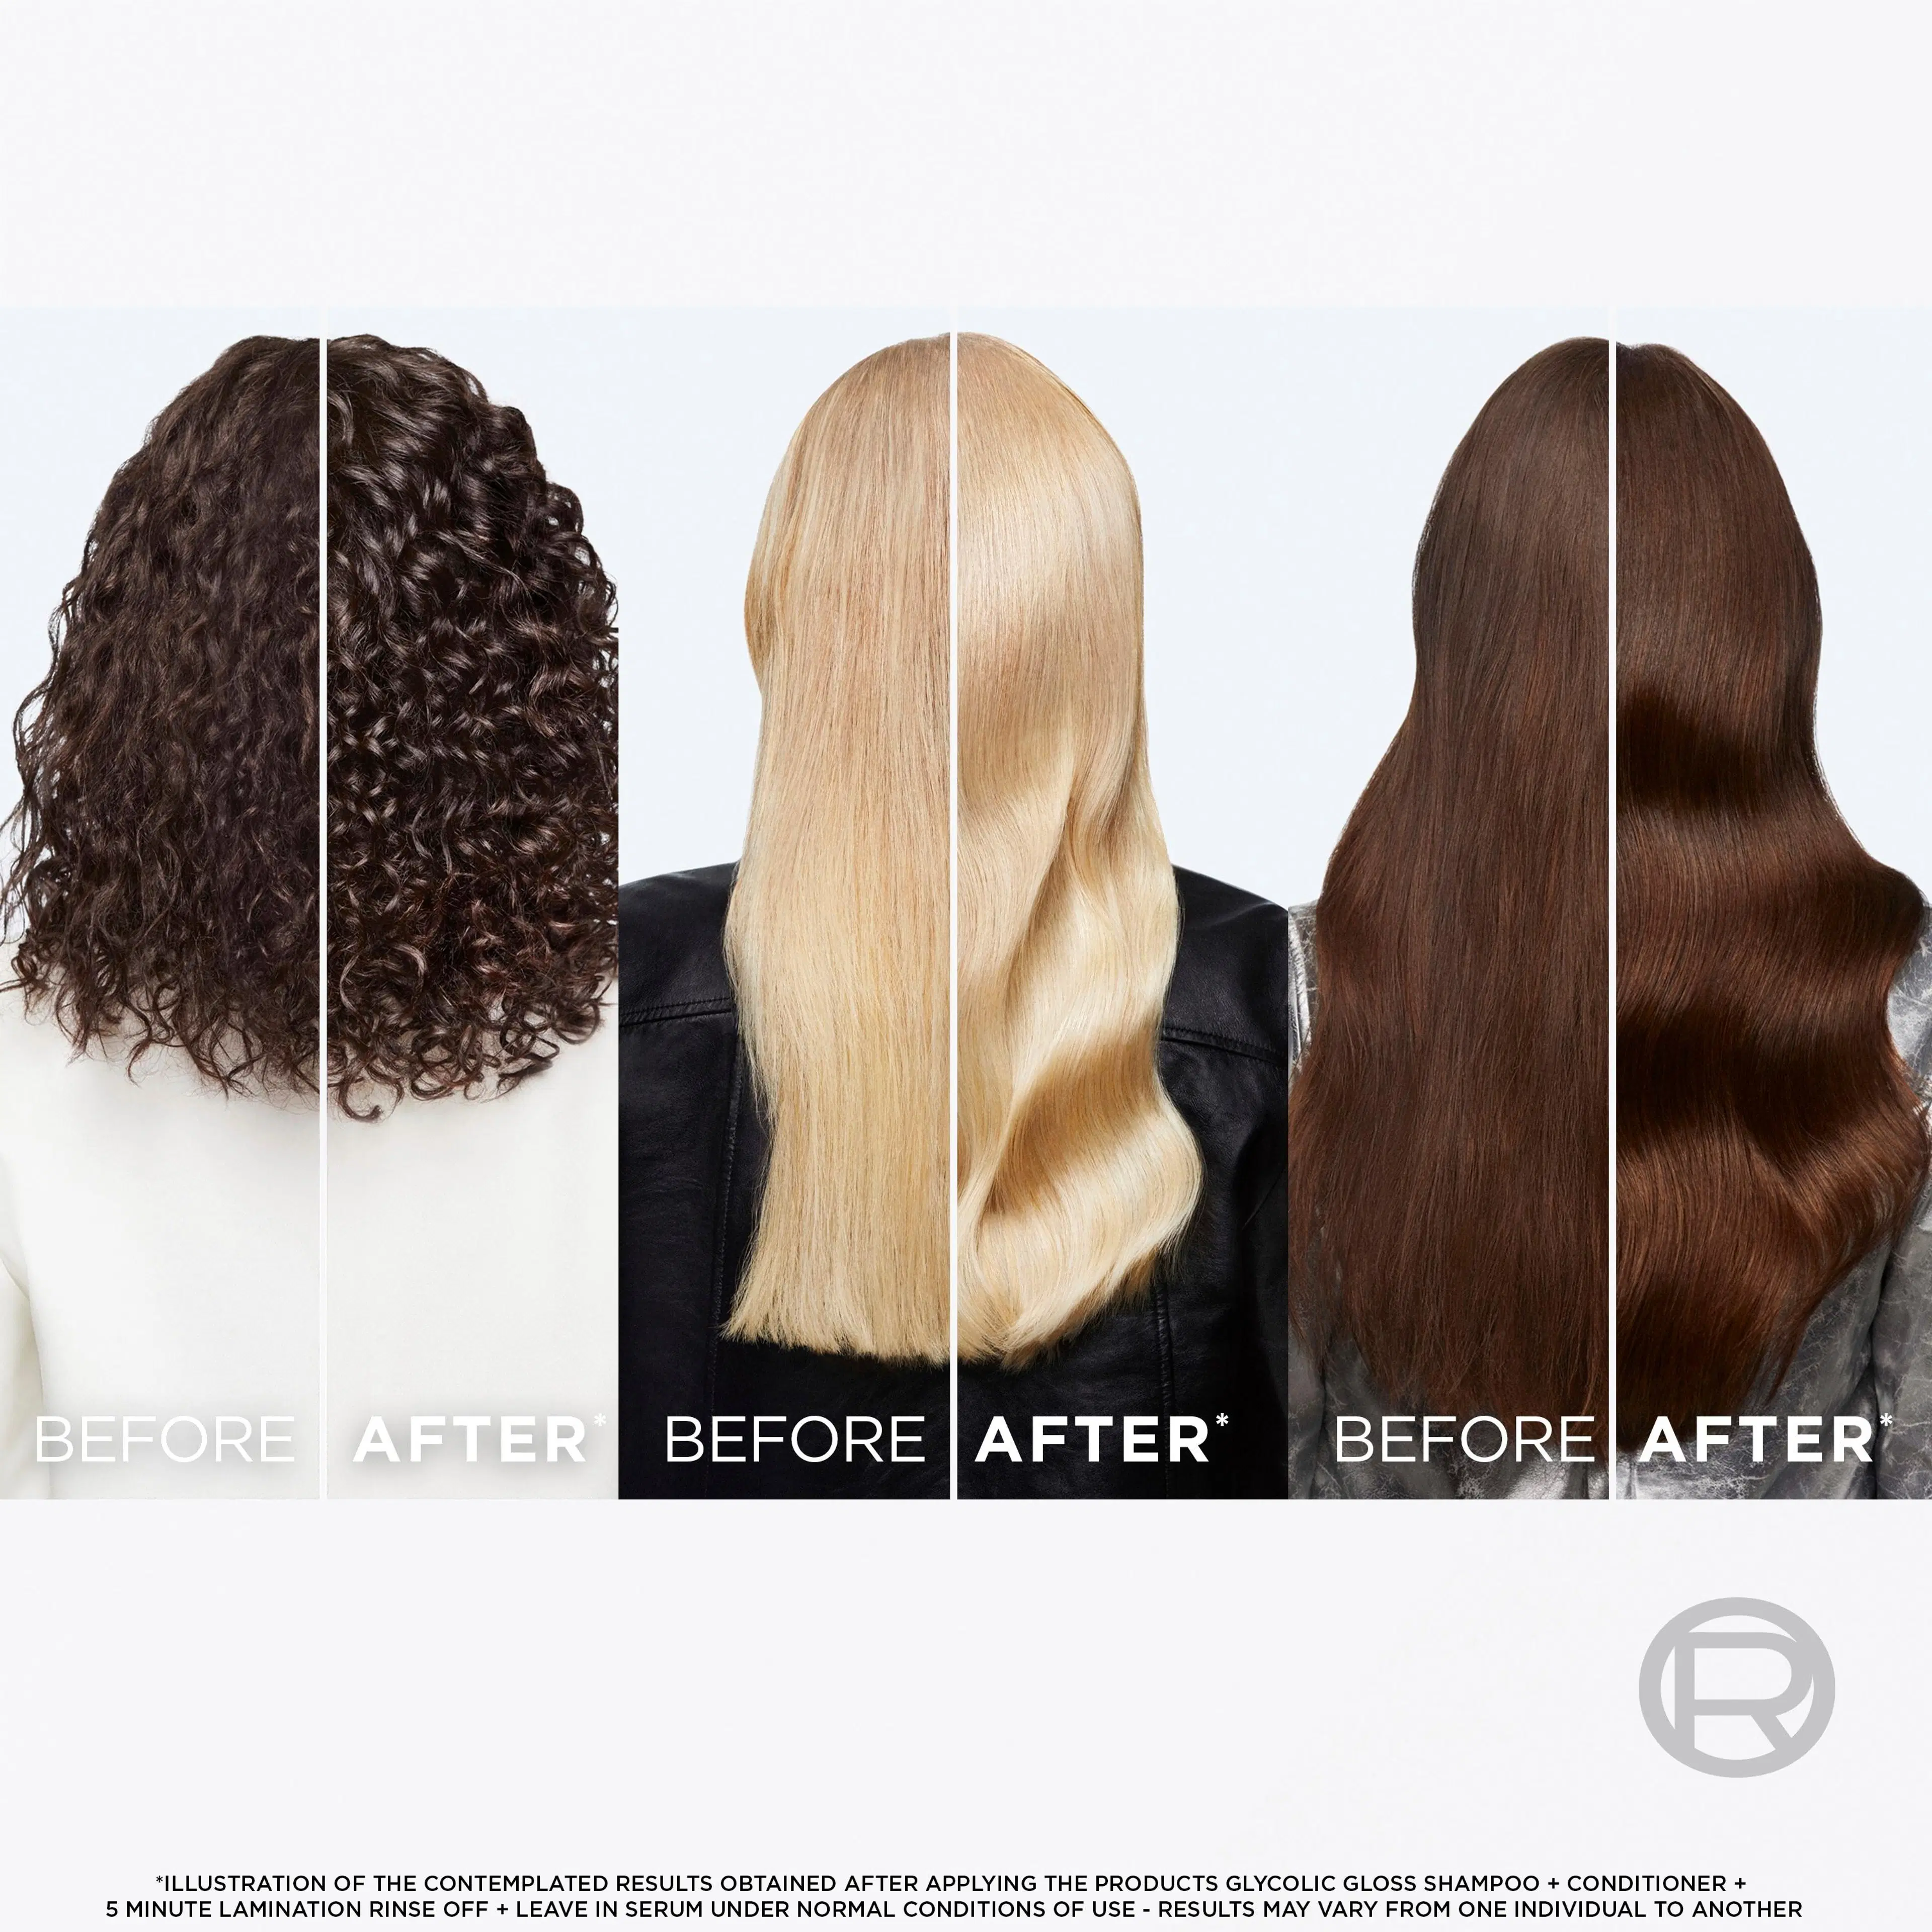 L'Oréal Paris Elvital Glycolic Gloss hiuksiin jätettävä seerumi kiillottomille hiuksille 150ml